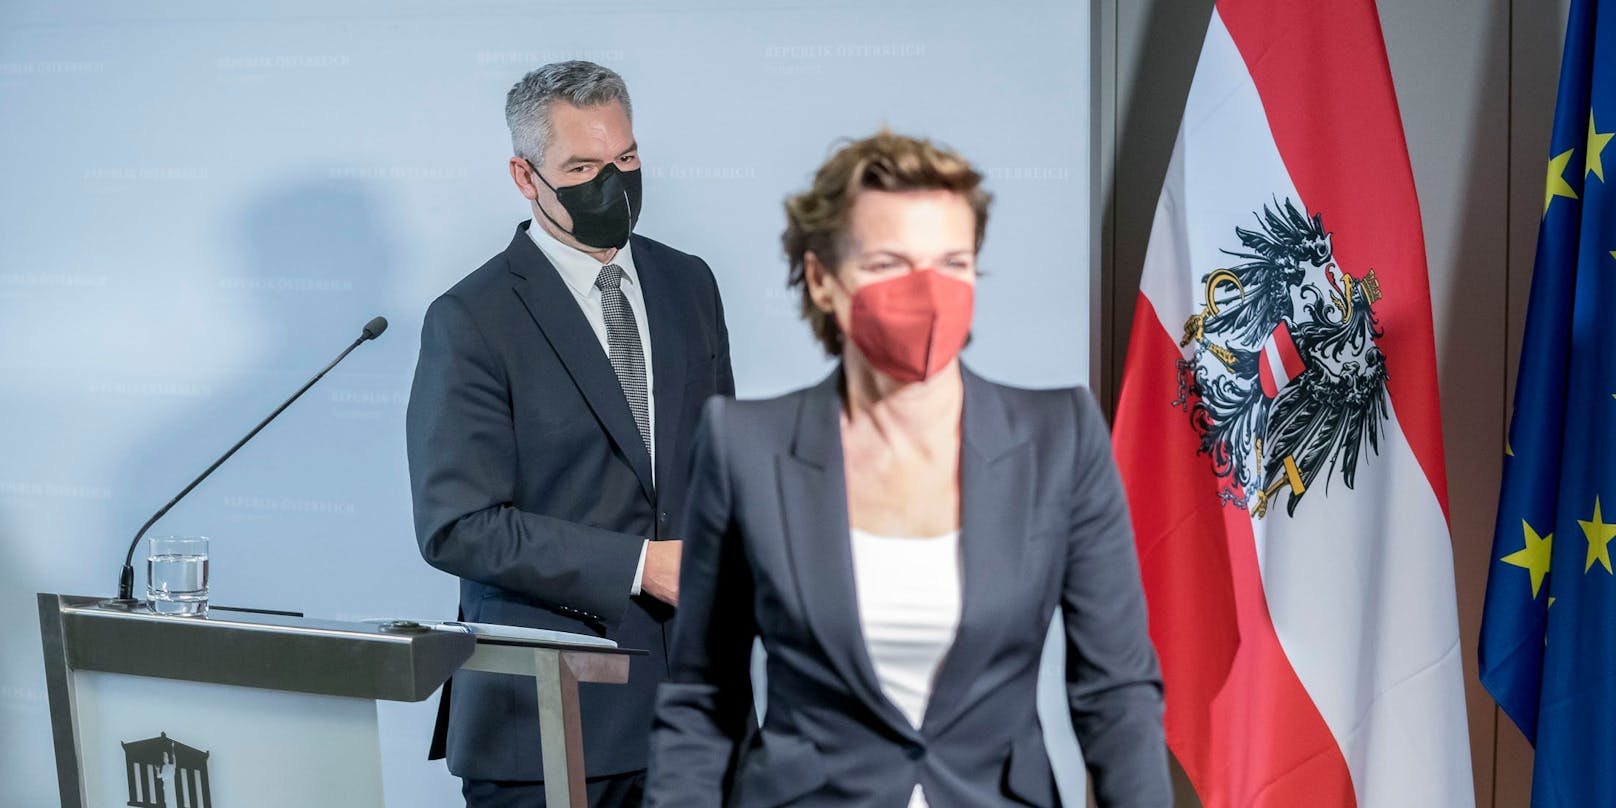 Bei den Österreichern kommt die SPÖ-Vorsitzende nach wie vor besser an als der Bundeskanzler.